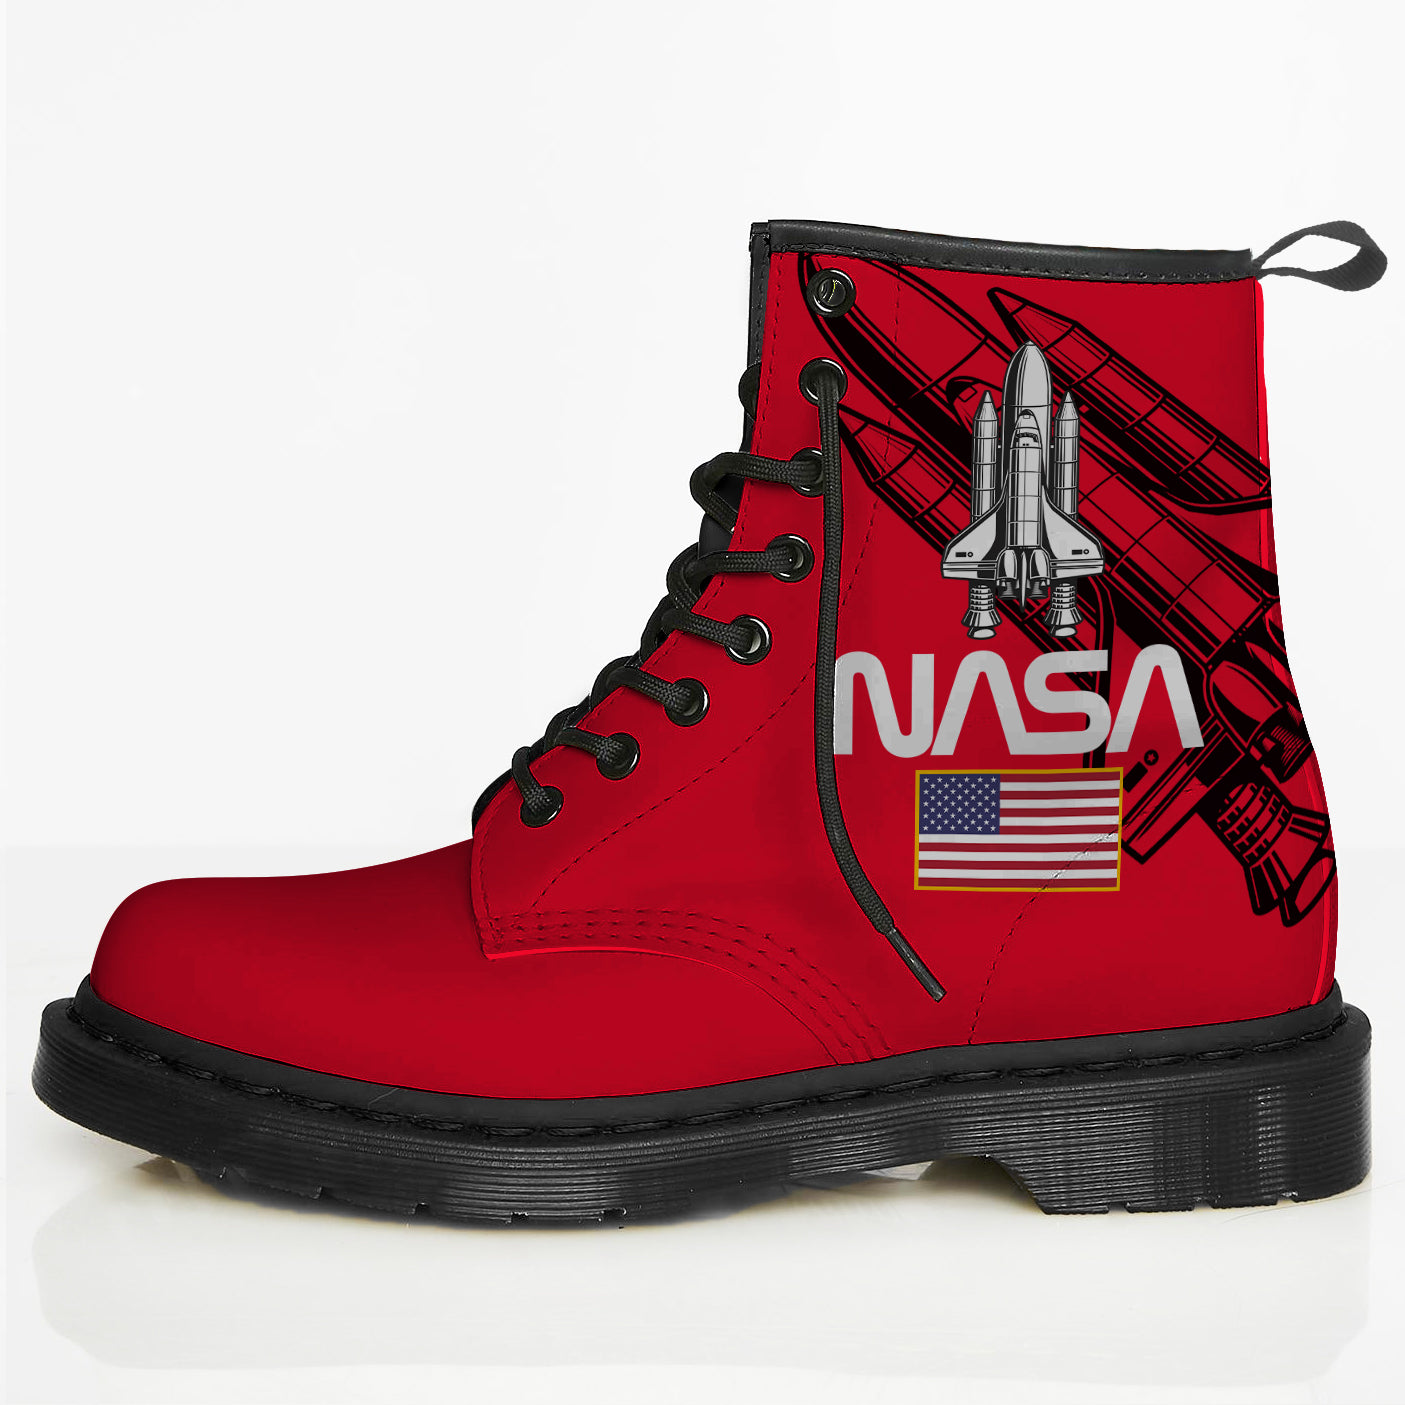 NASA 3 Boots